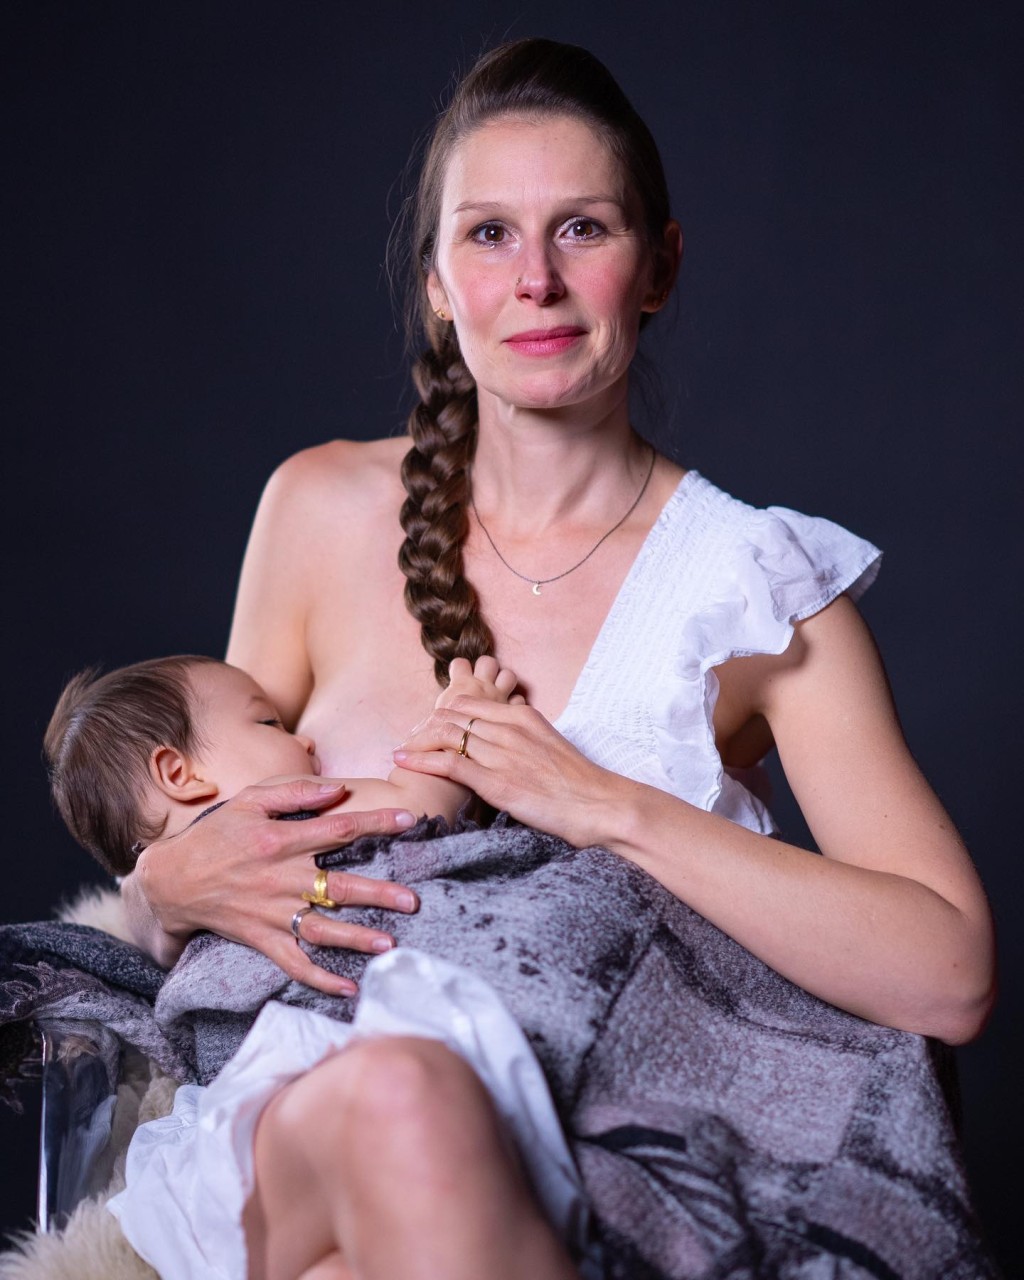 原和玉日前在IG分享多张太太Andrea喂哺母乳的照片。